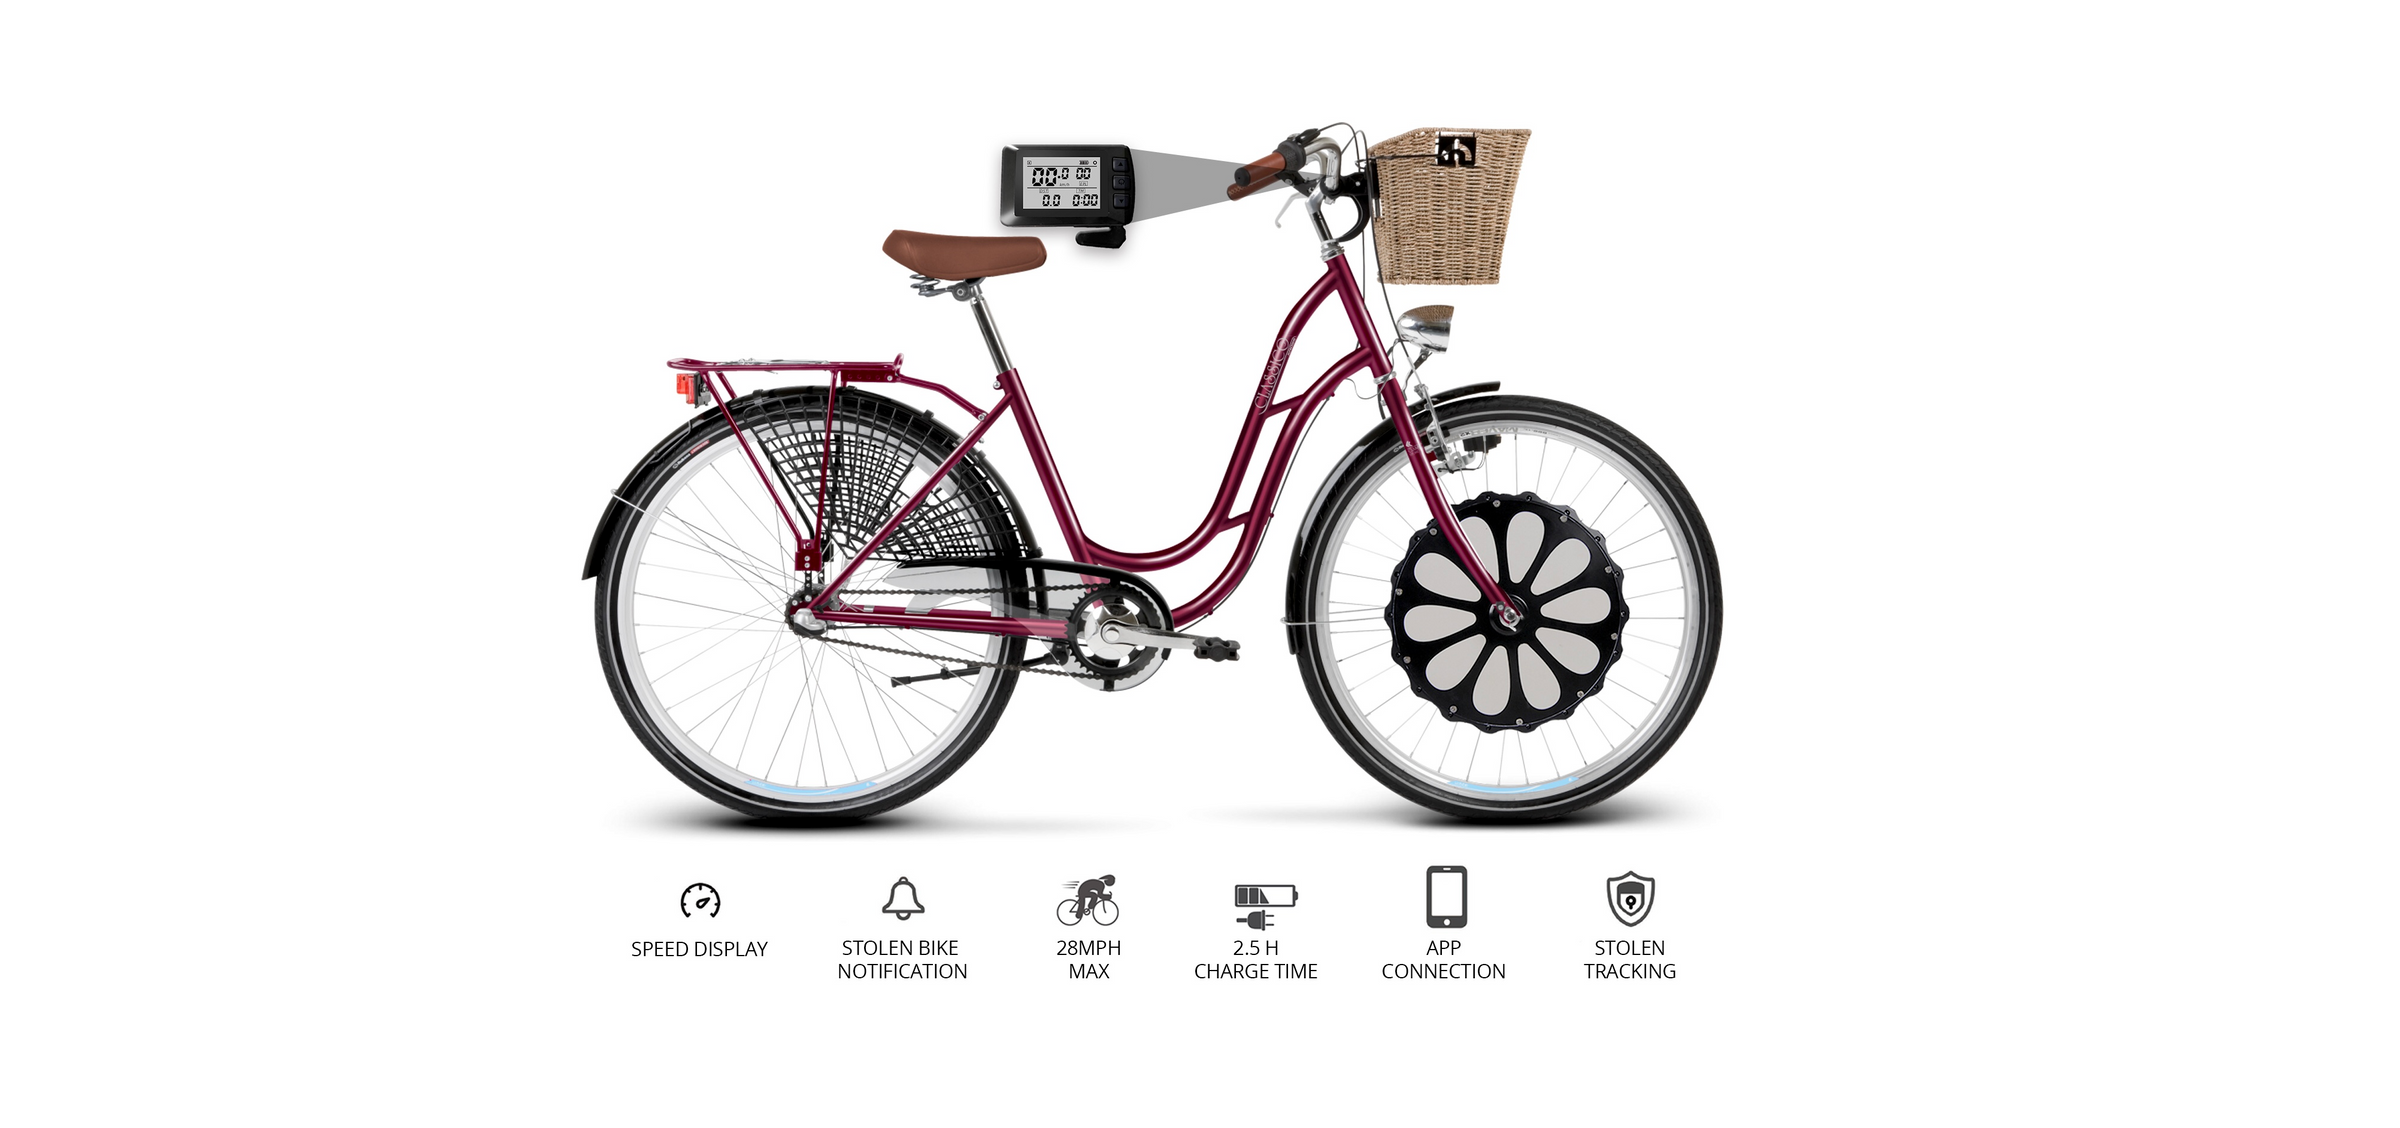 Electric bike kit conversion kit that transform a regular bicycle into an electric bike